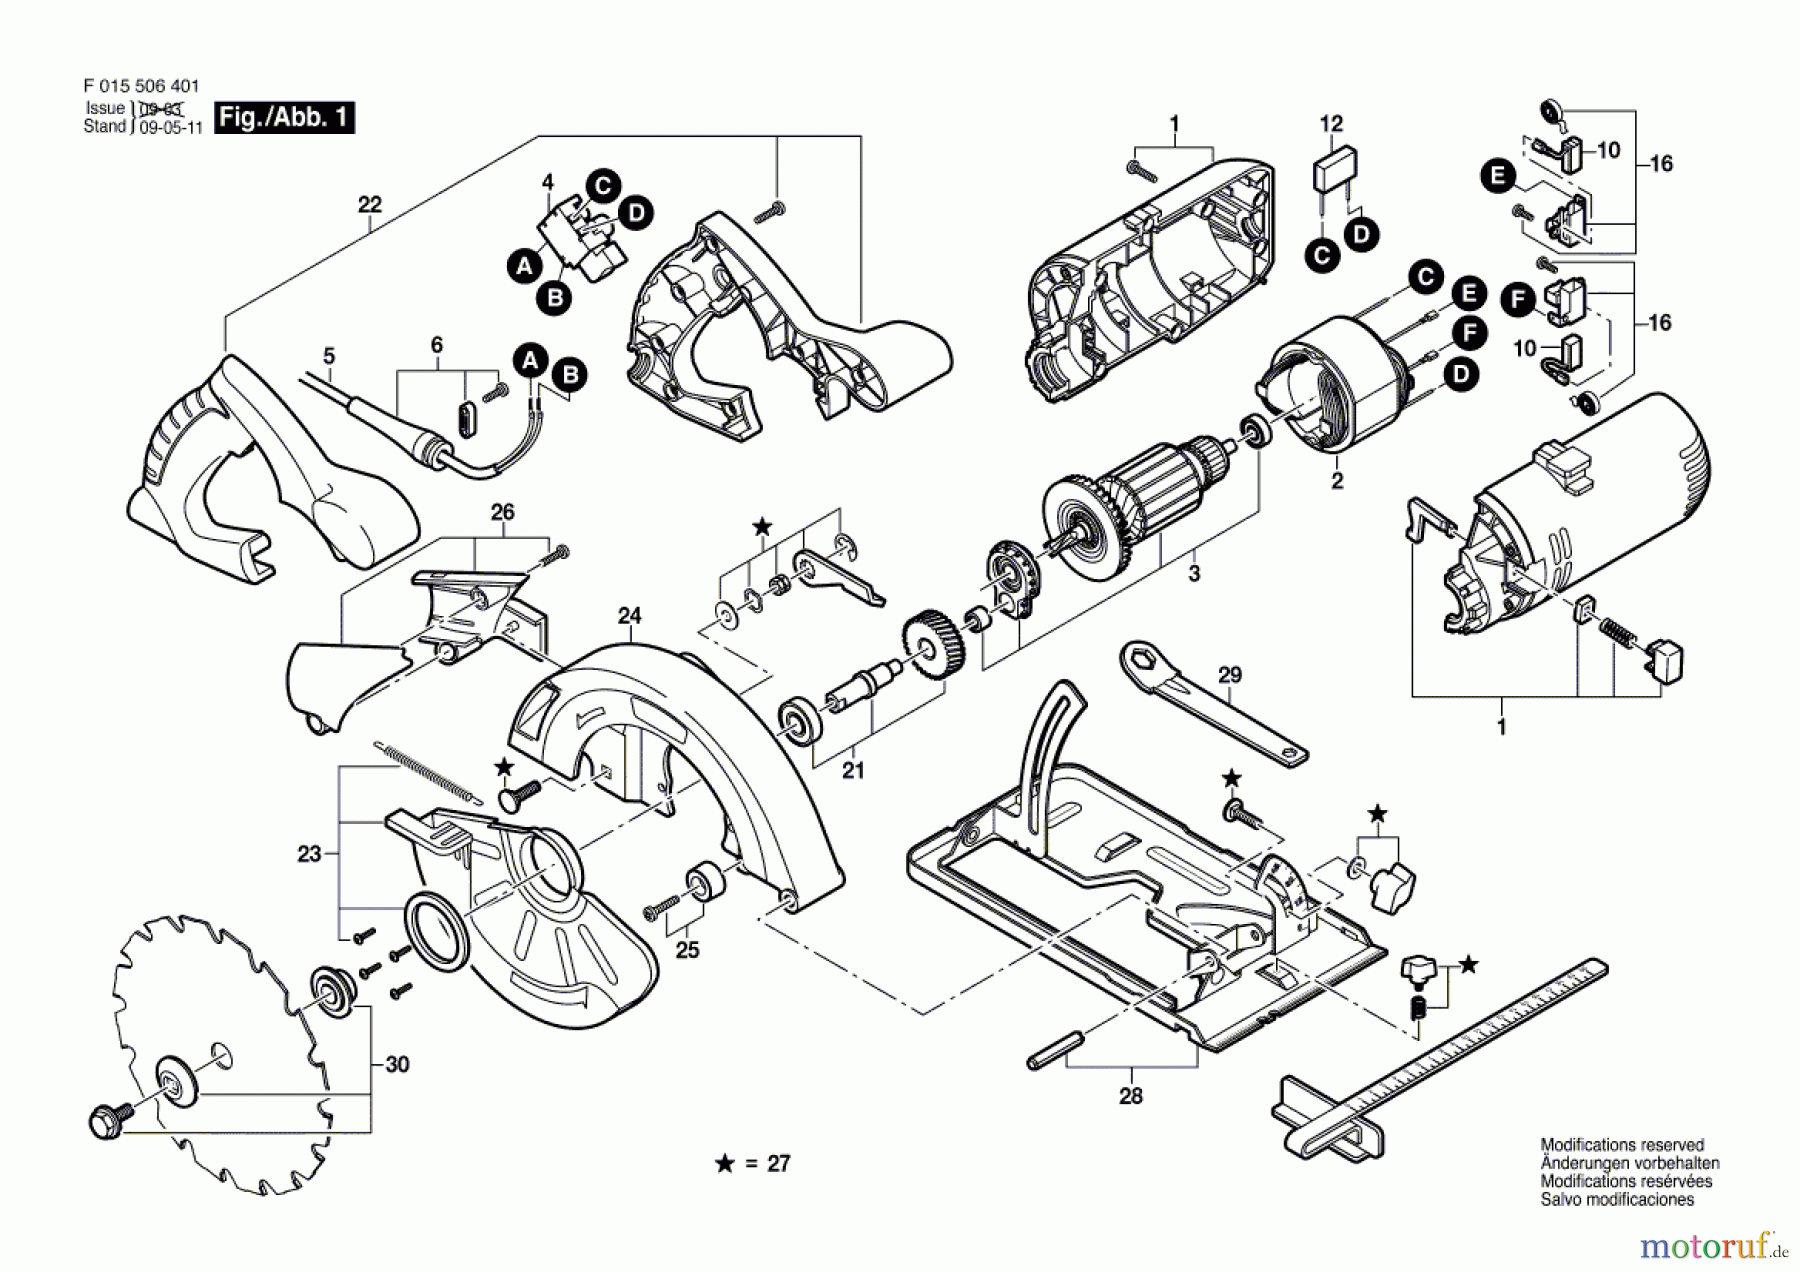  Bosch Werkzeug Handkreissäge 5064 Seite 1